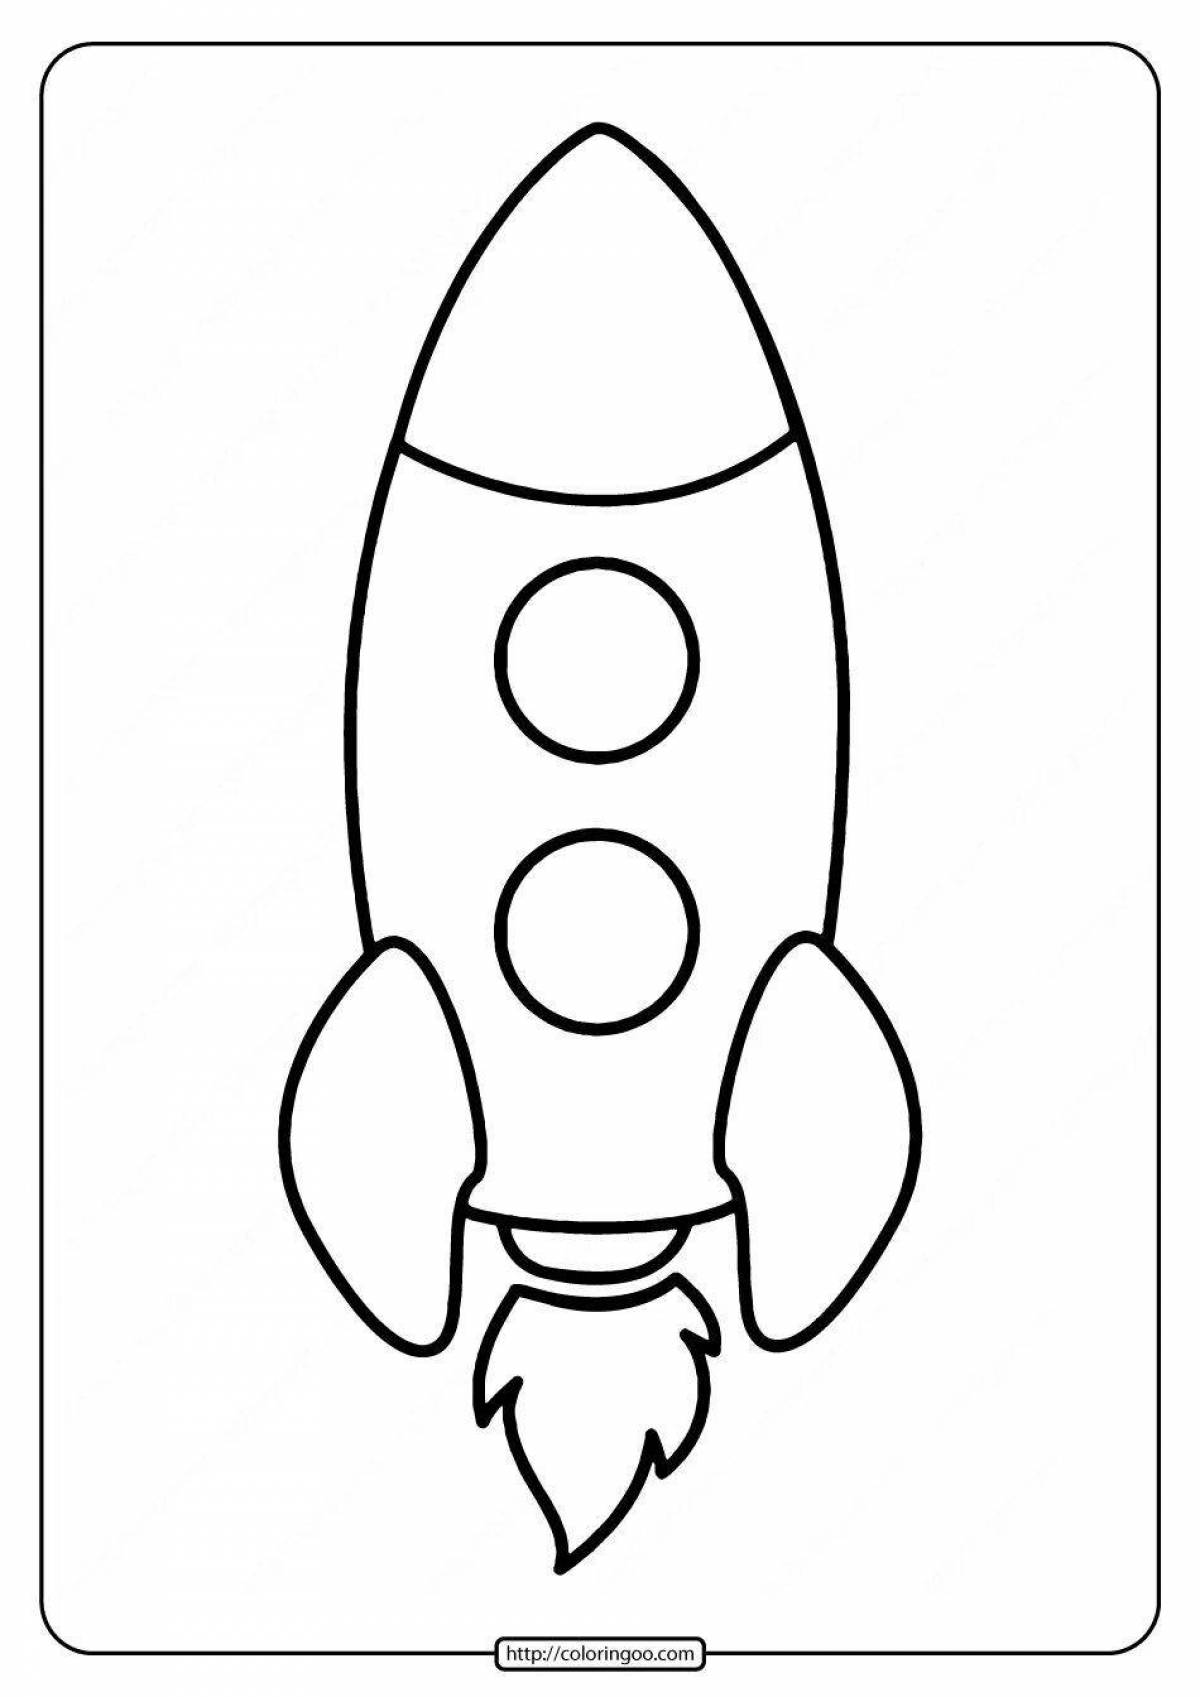 Веселая ракета-раскраска для детей